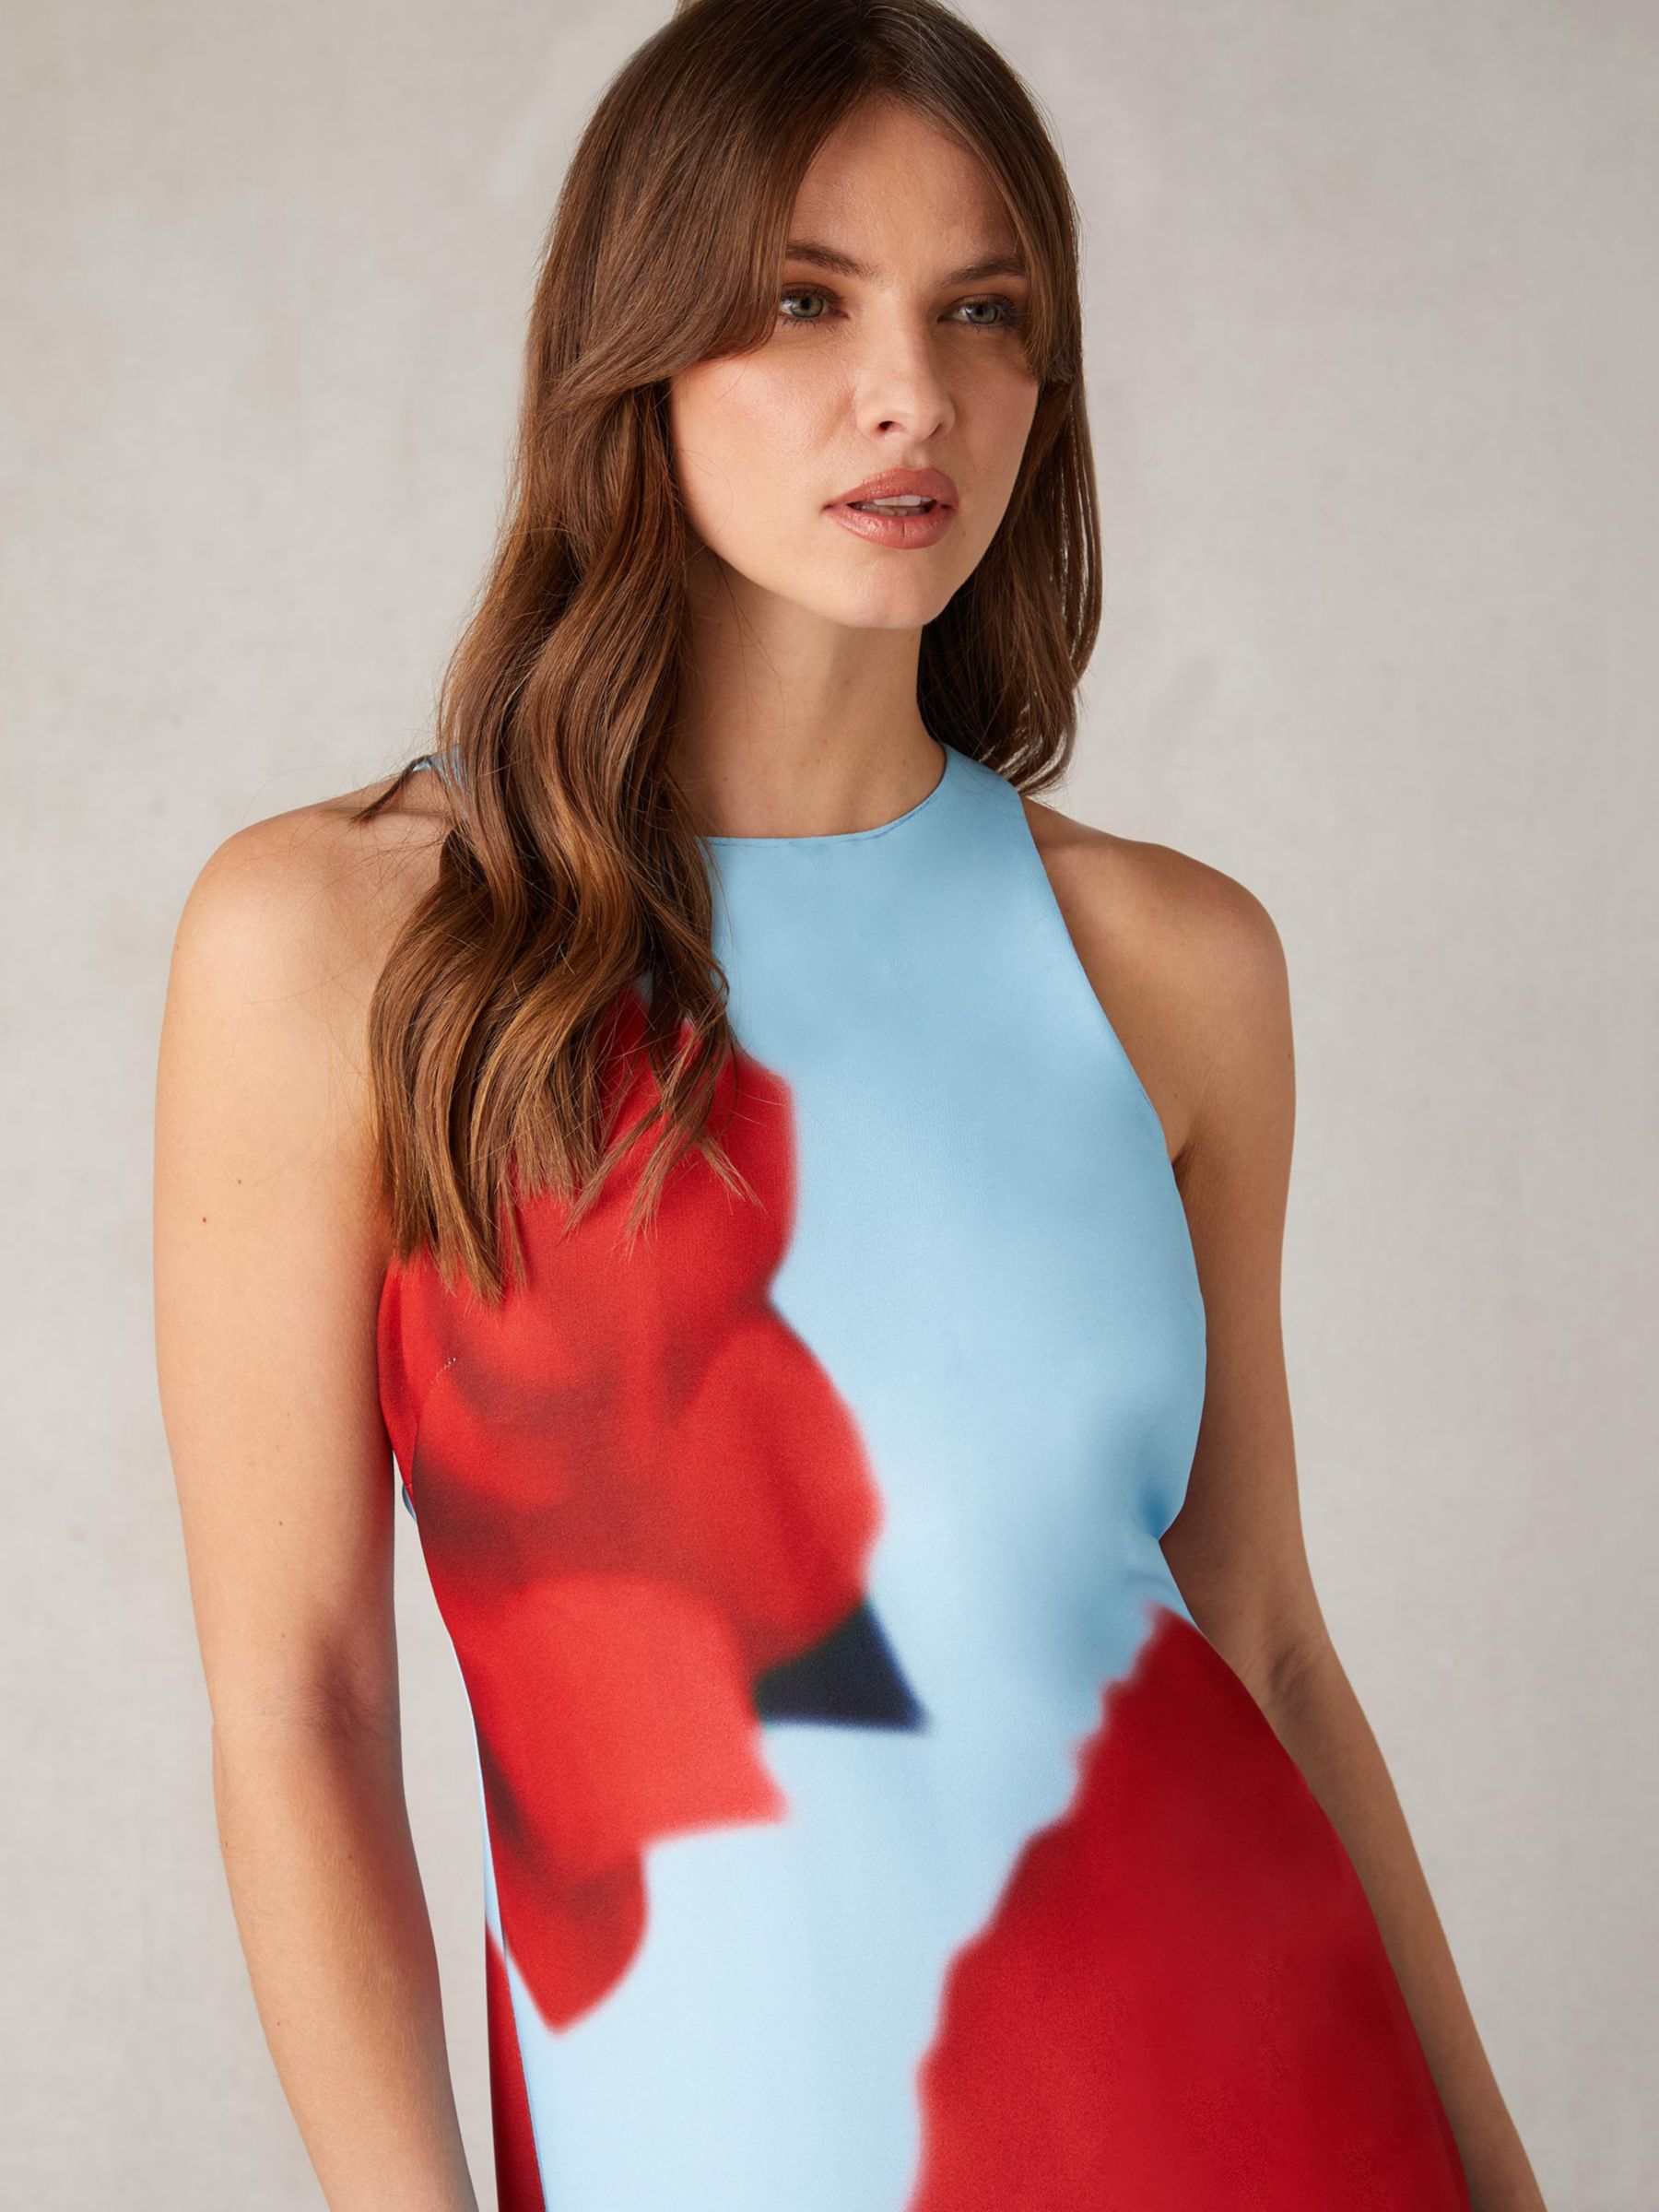 Ro&Zo Camilla Rose Print Maxi Dress, Aqua/Red, 6